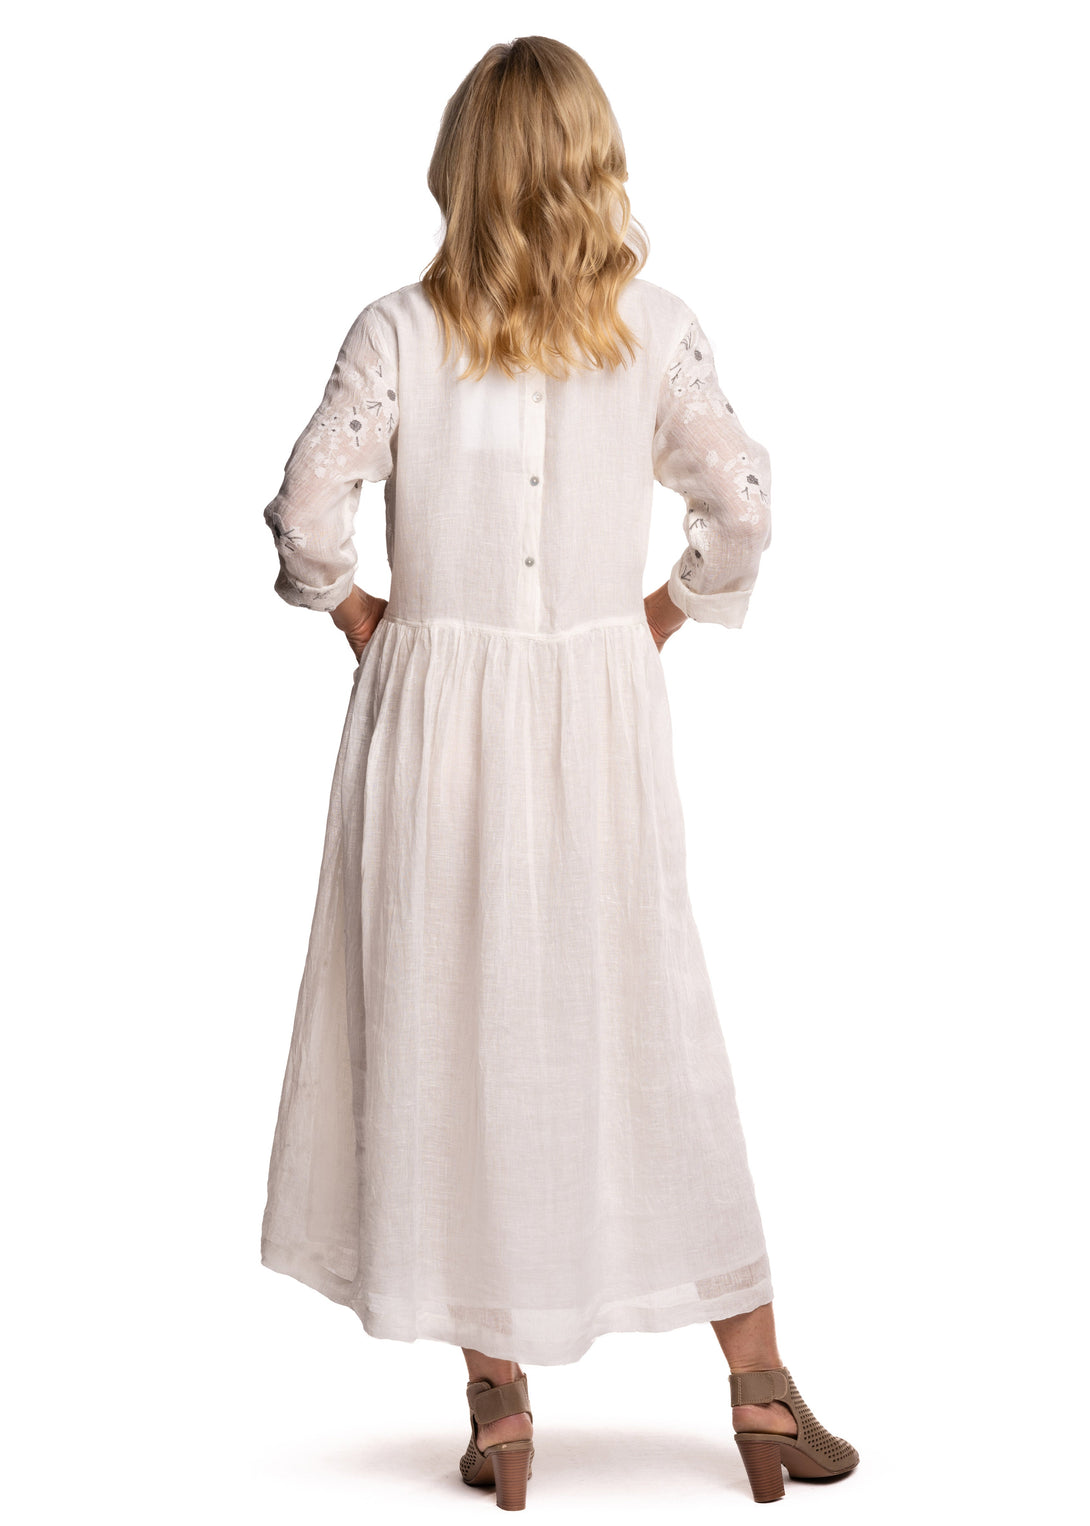 Lottie Dress in Cream